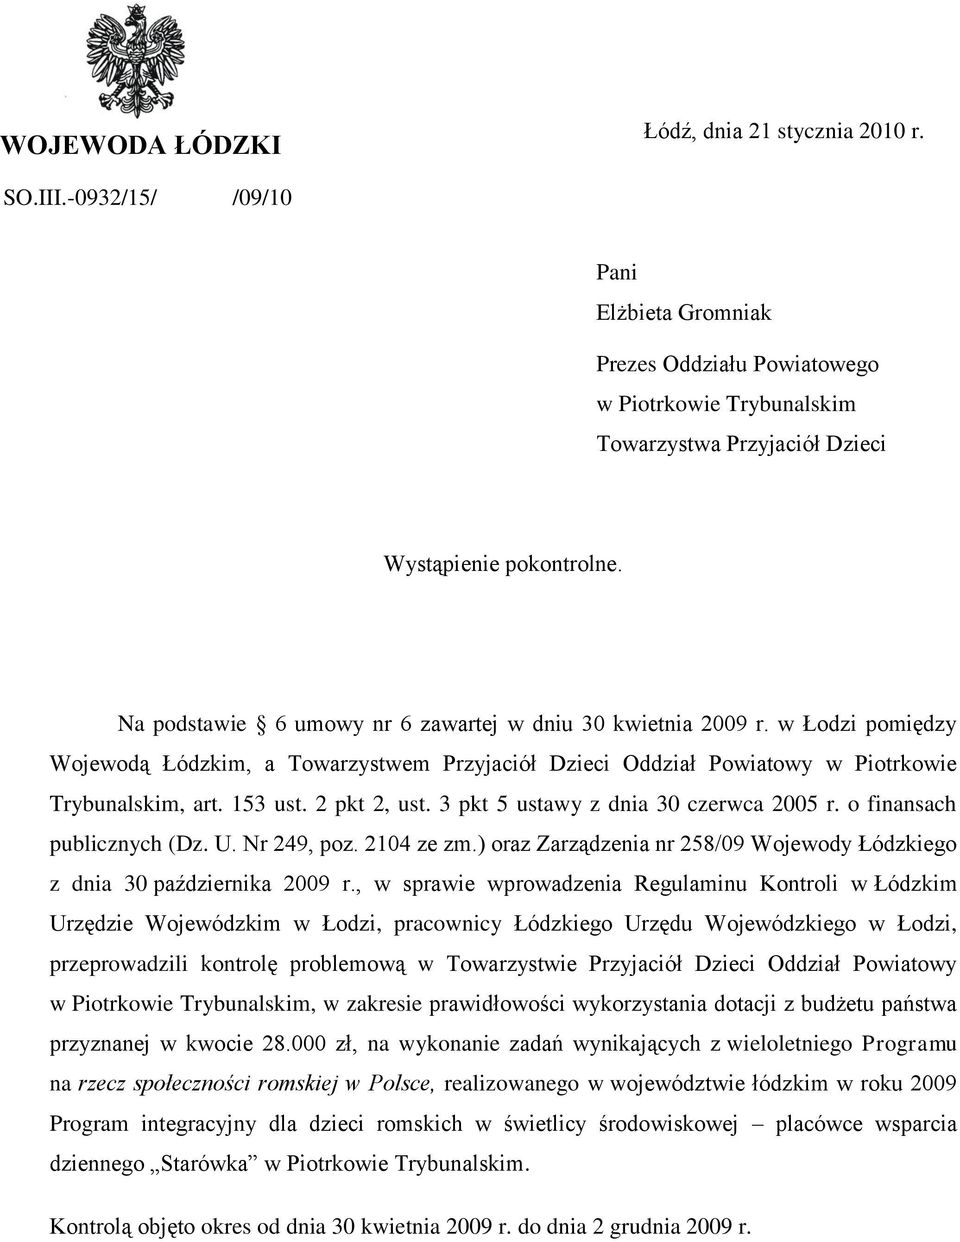 Na podstawie 6 umowy nr 6 zawartej w dniu 30 kwietnia 2009 r. w Łodzi pomiędzy Wojewodą Łódzkim, a Towarzystwem Przyjaciół Dzieci Oddział Powiatowy w Piotrkowie Trybunalskim, art. 153 ust.